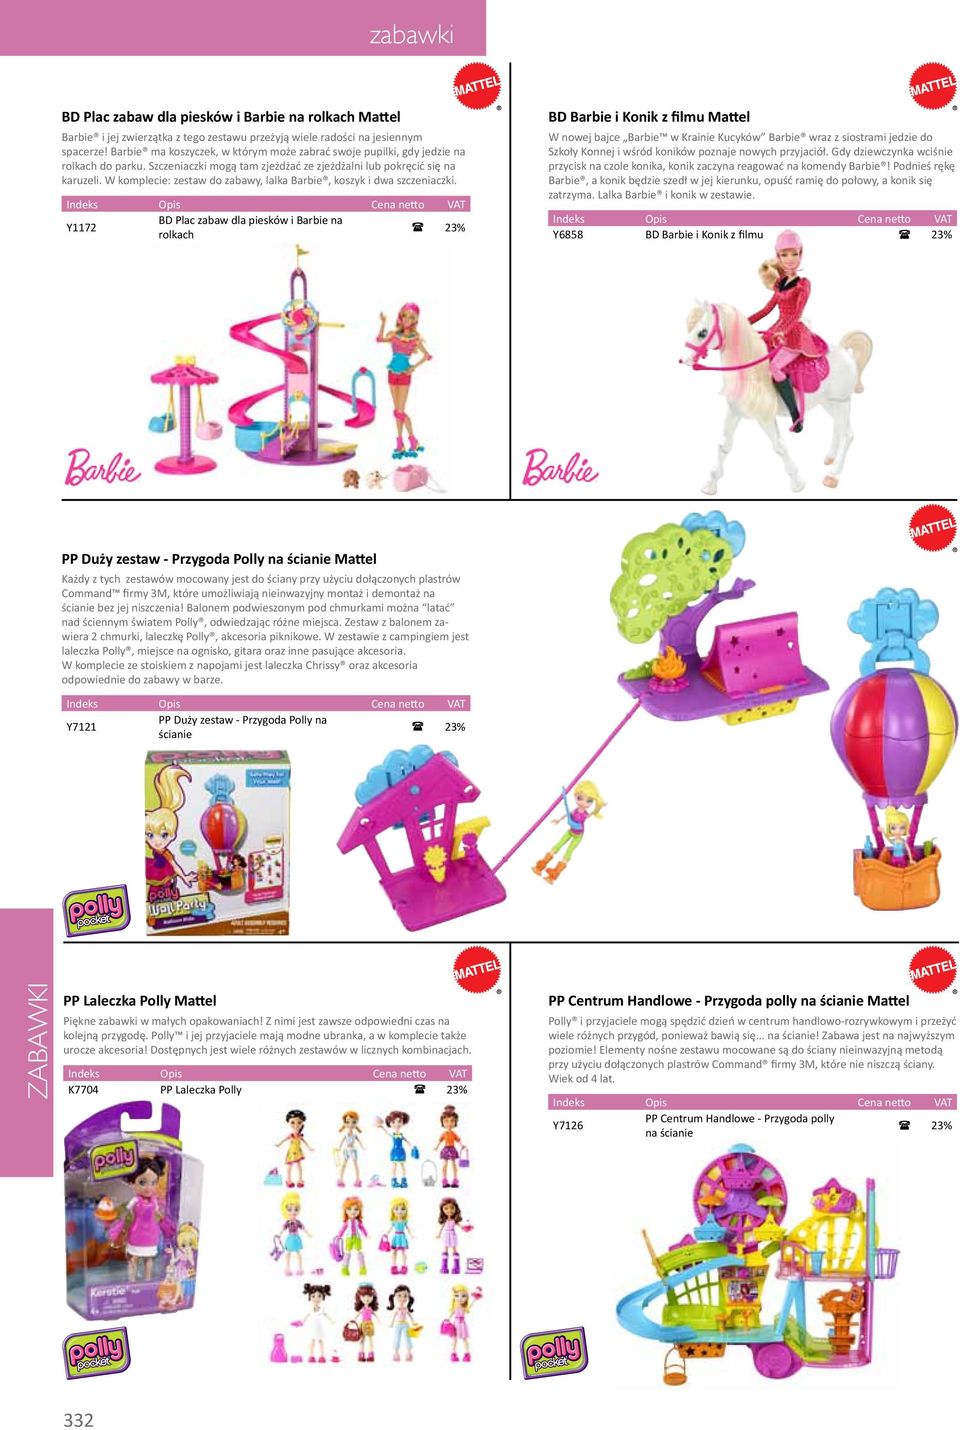 W komplecie: zestaw do zabawy, lalka Barbie, koszyk i dwa szczeniaczki.